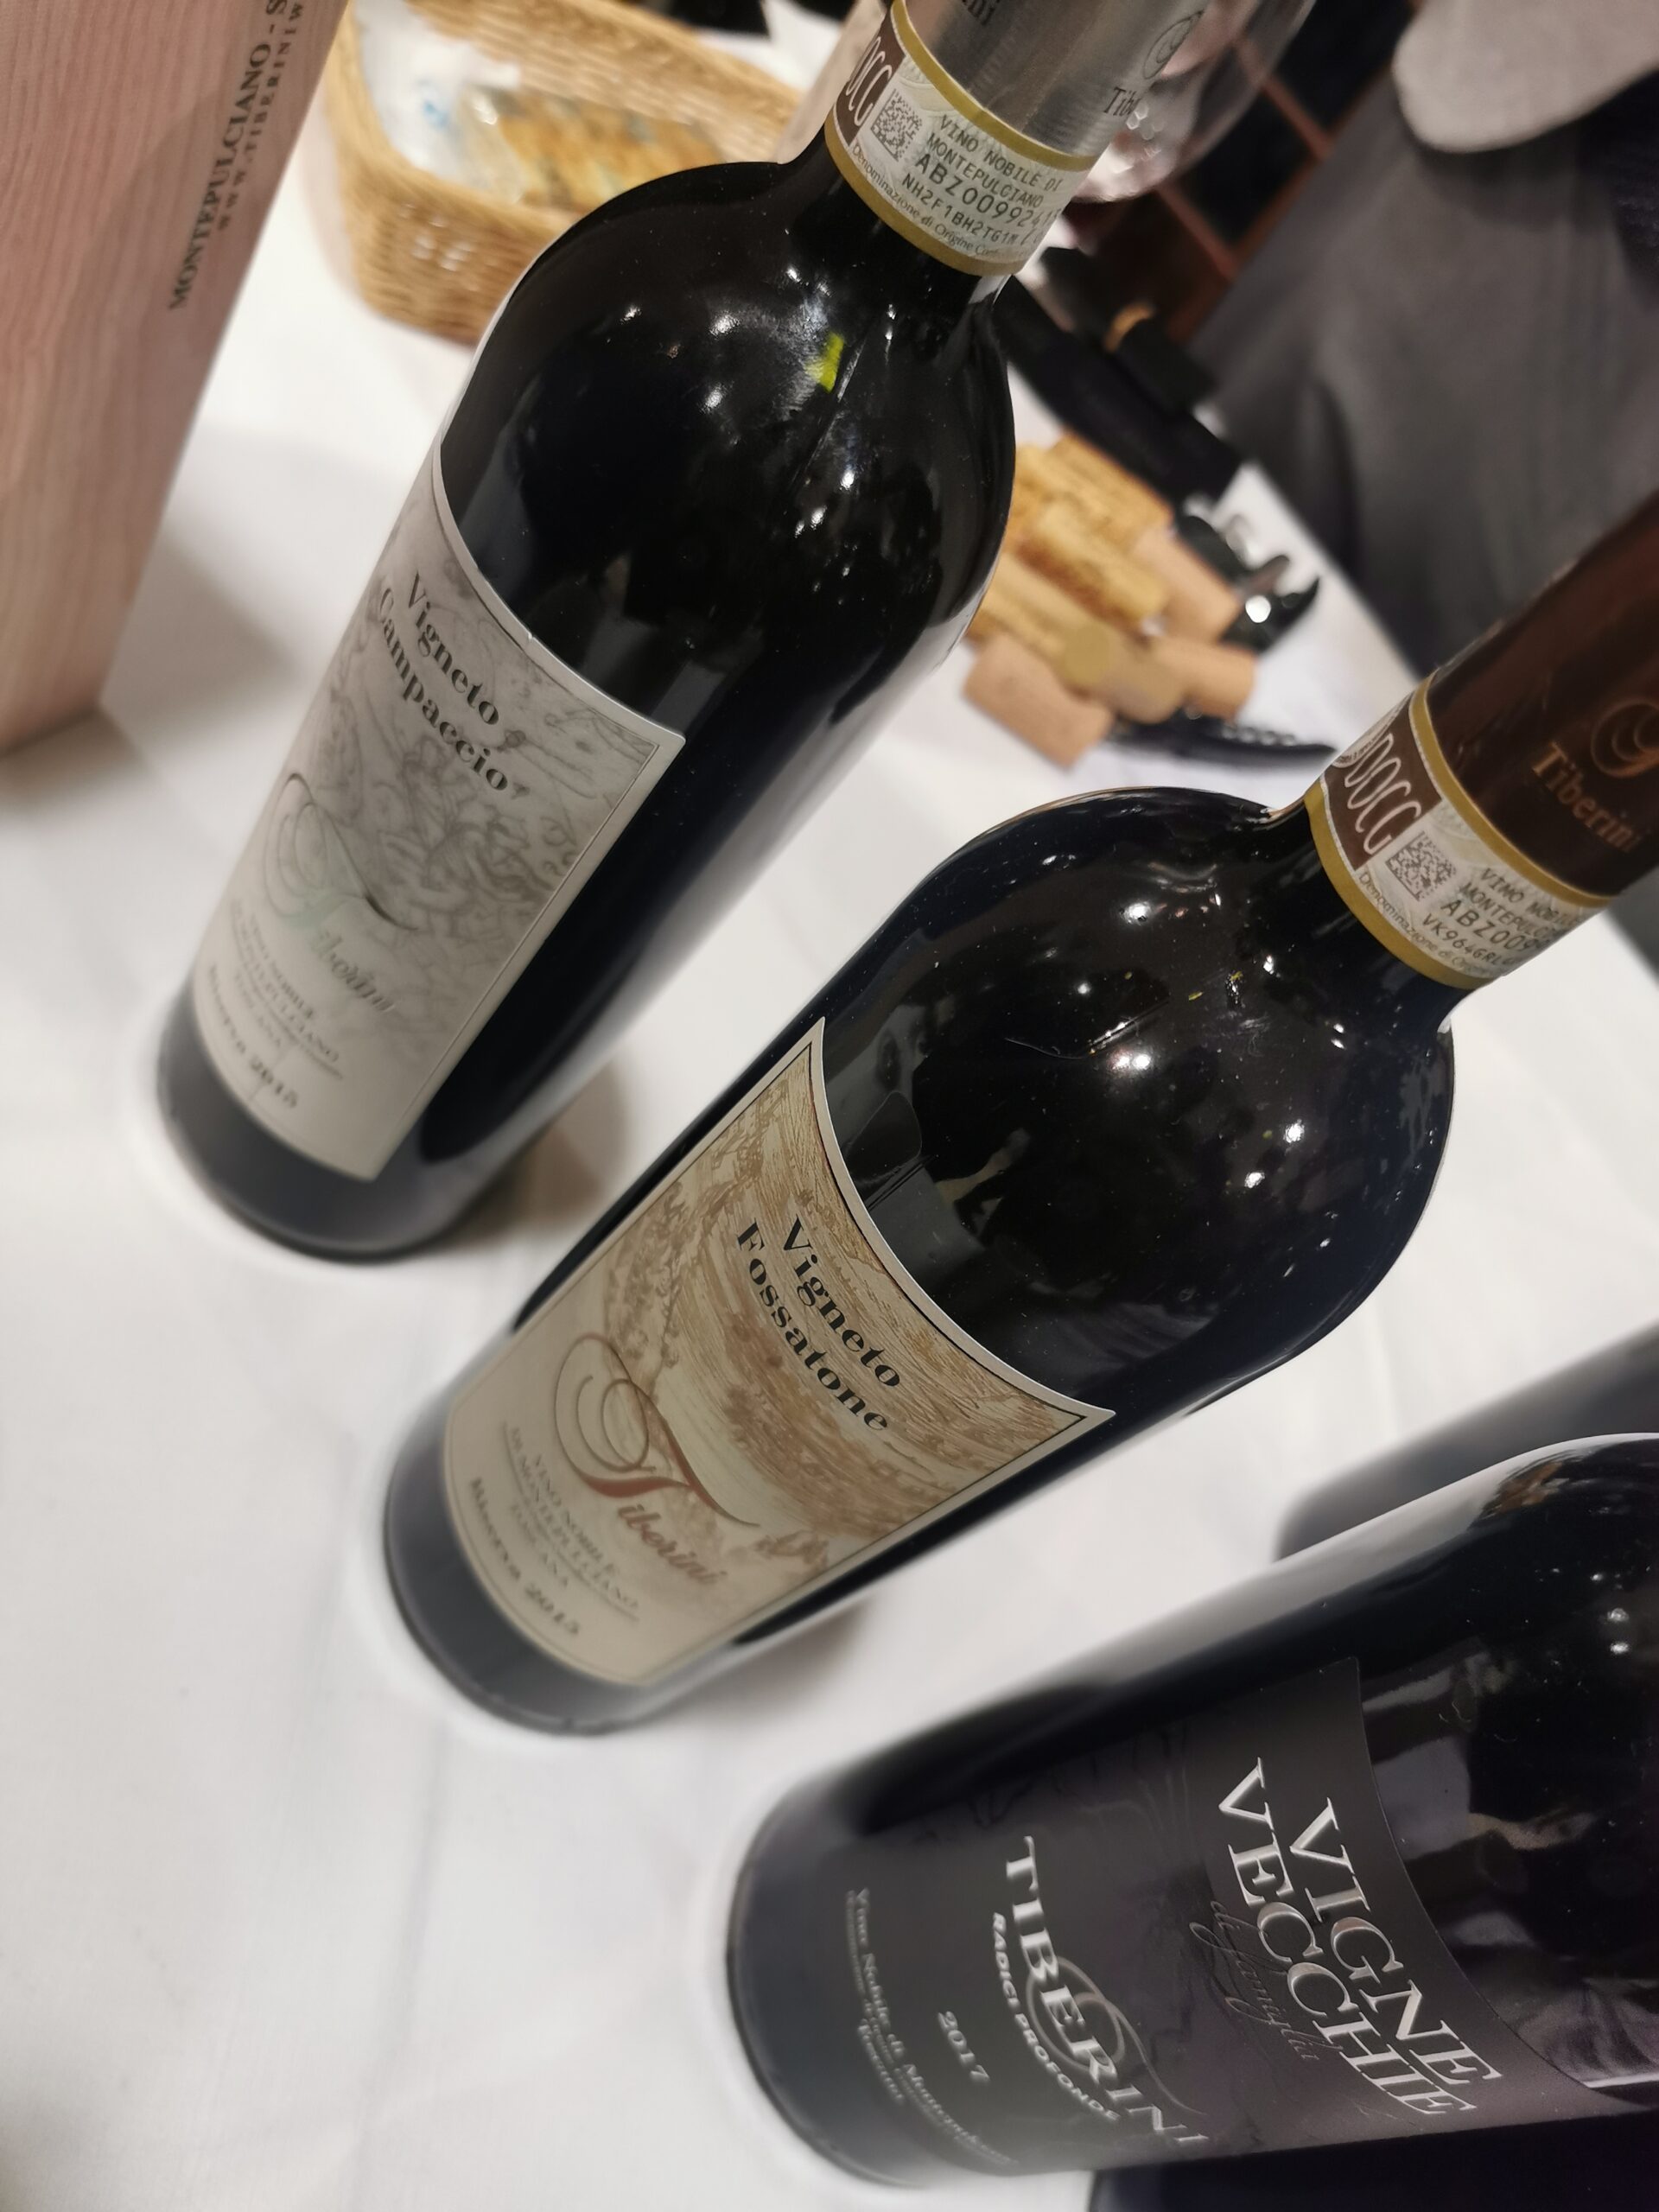 Bottiglie assaggiate durante l'evento da Elsa Leandri, Cantina Tiberini Wine, Vino Nobile di Montepulciano